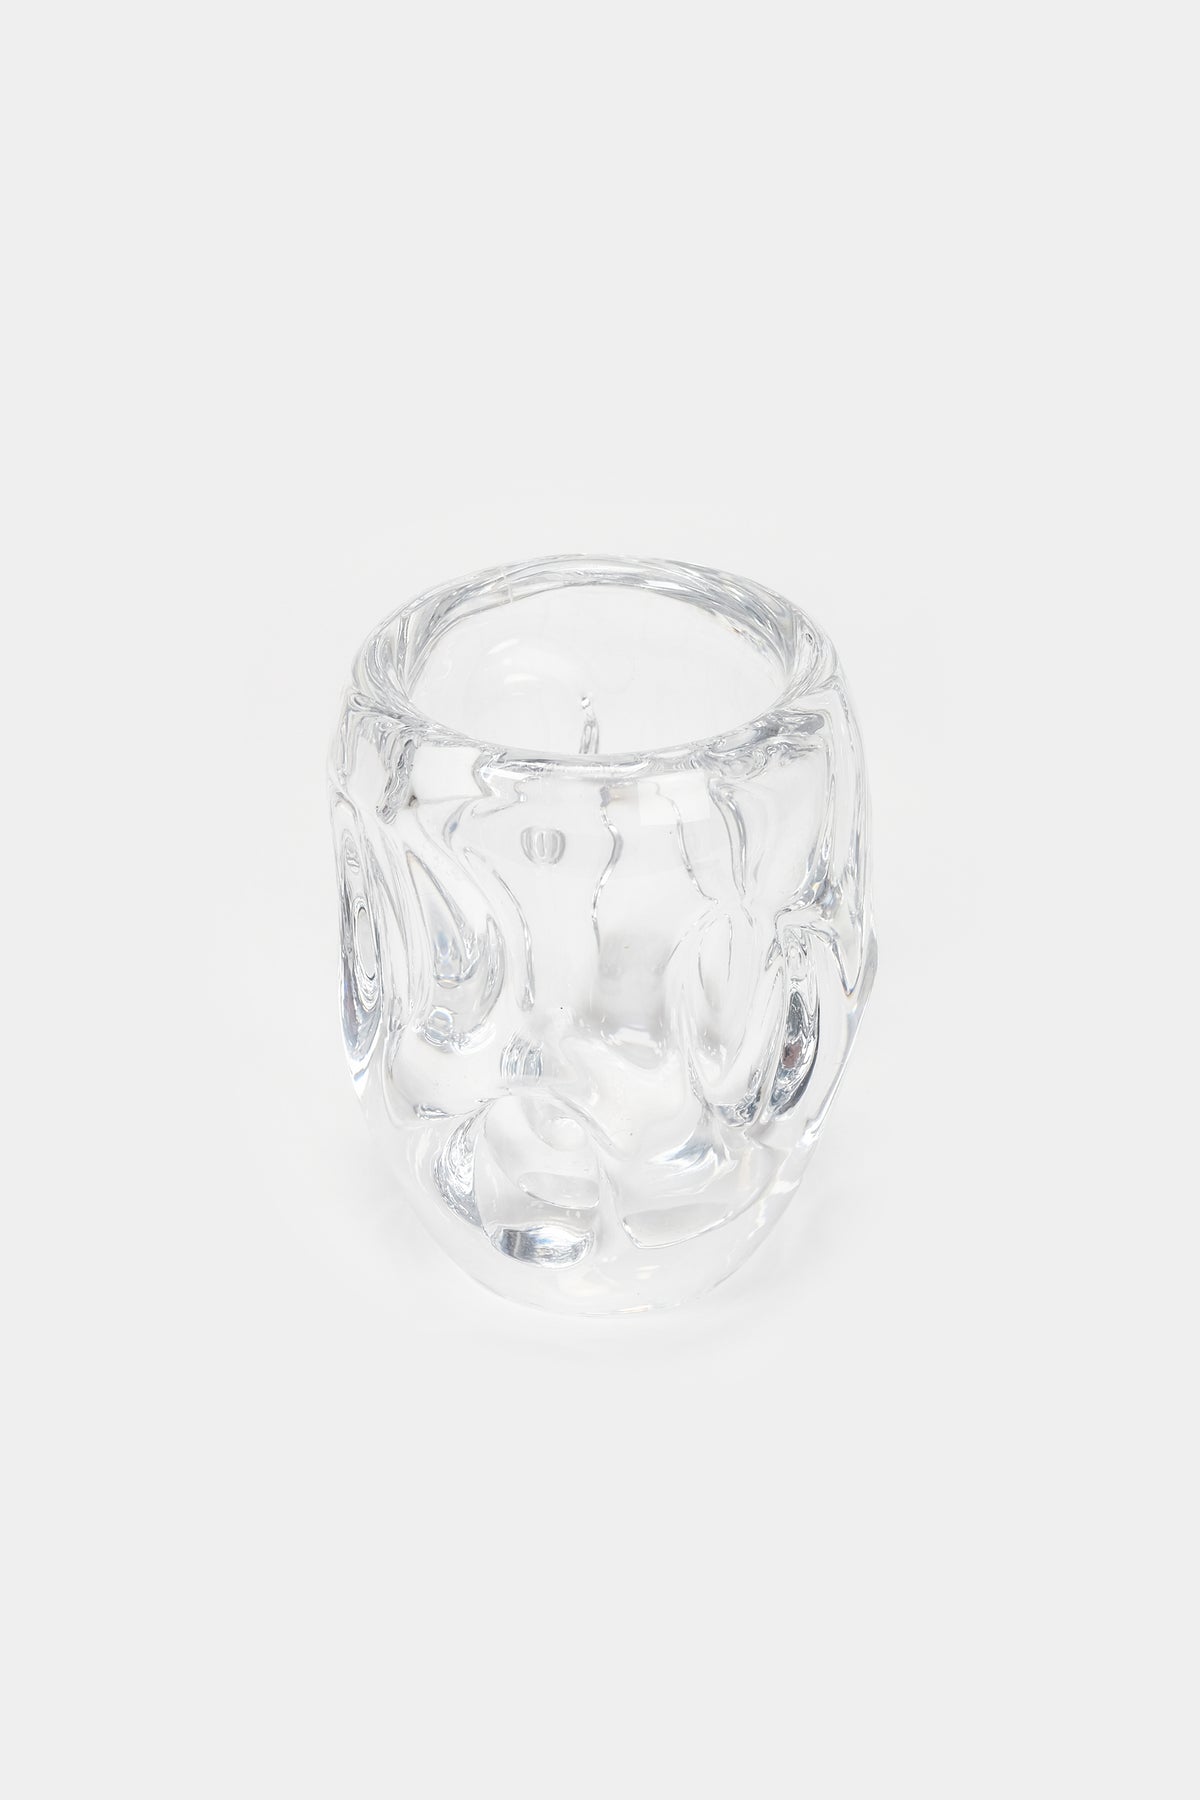 Crystal glass vase, Sèvres, france